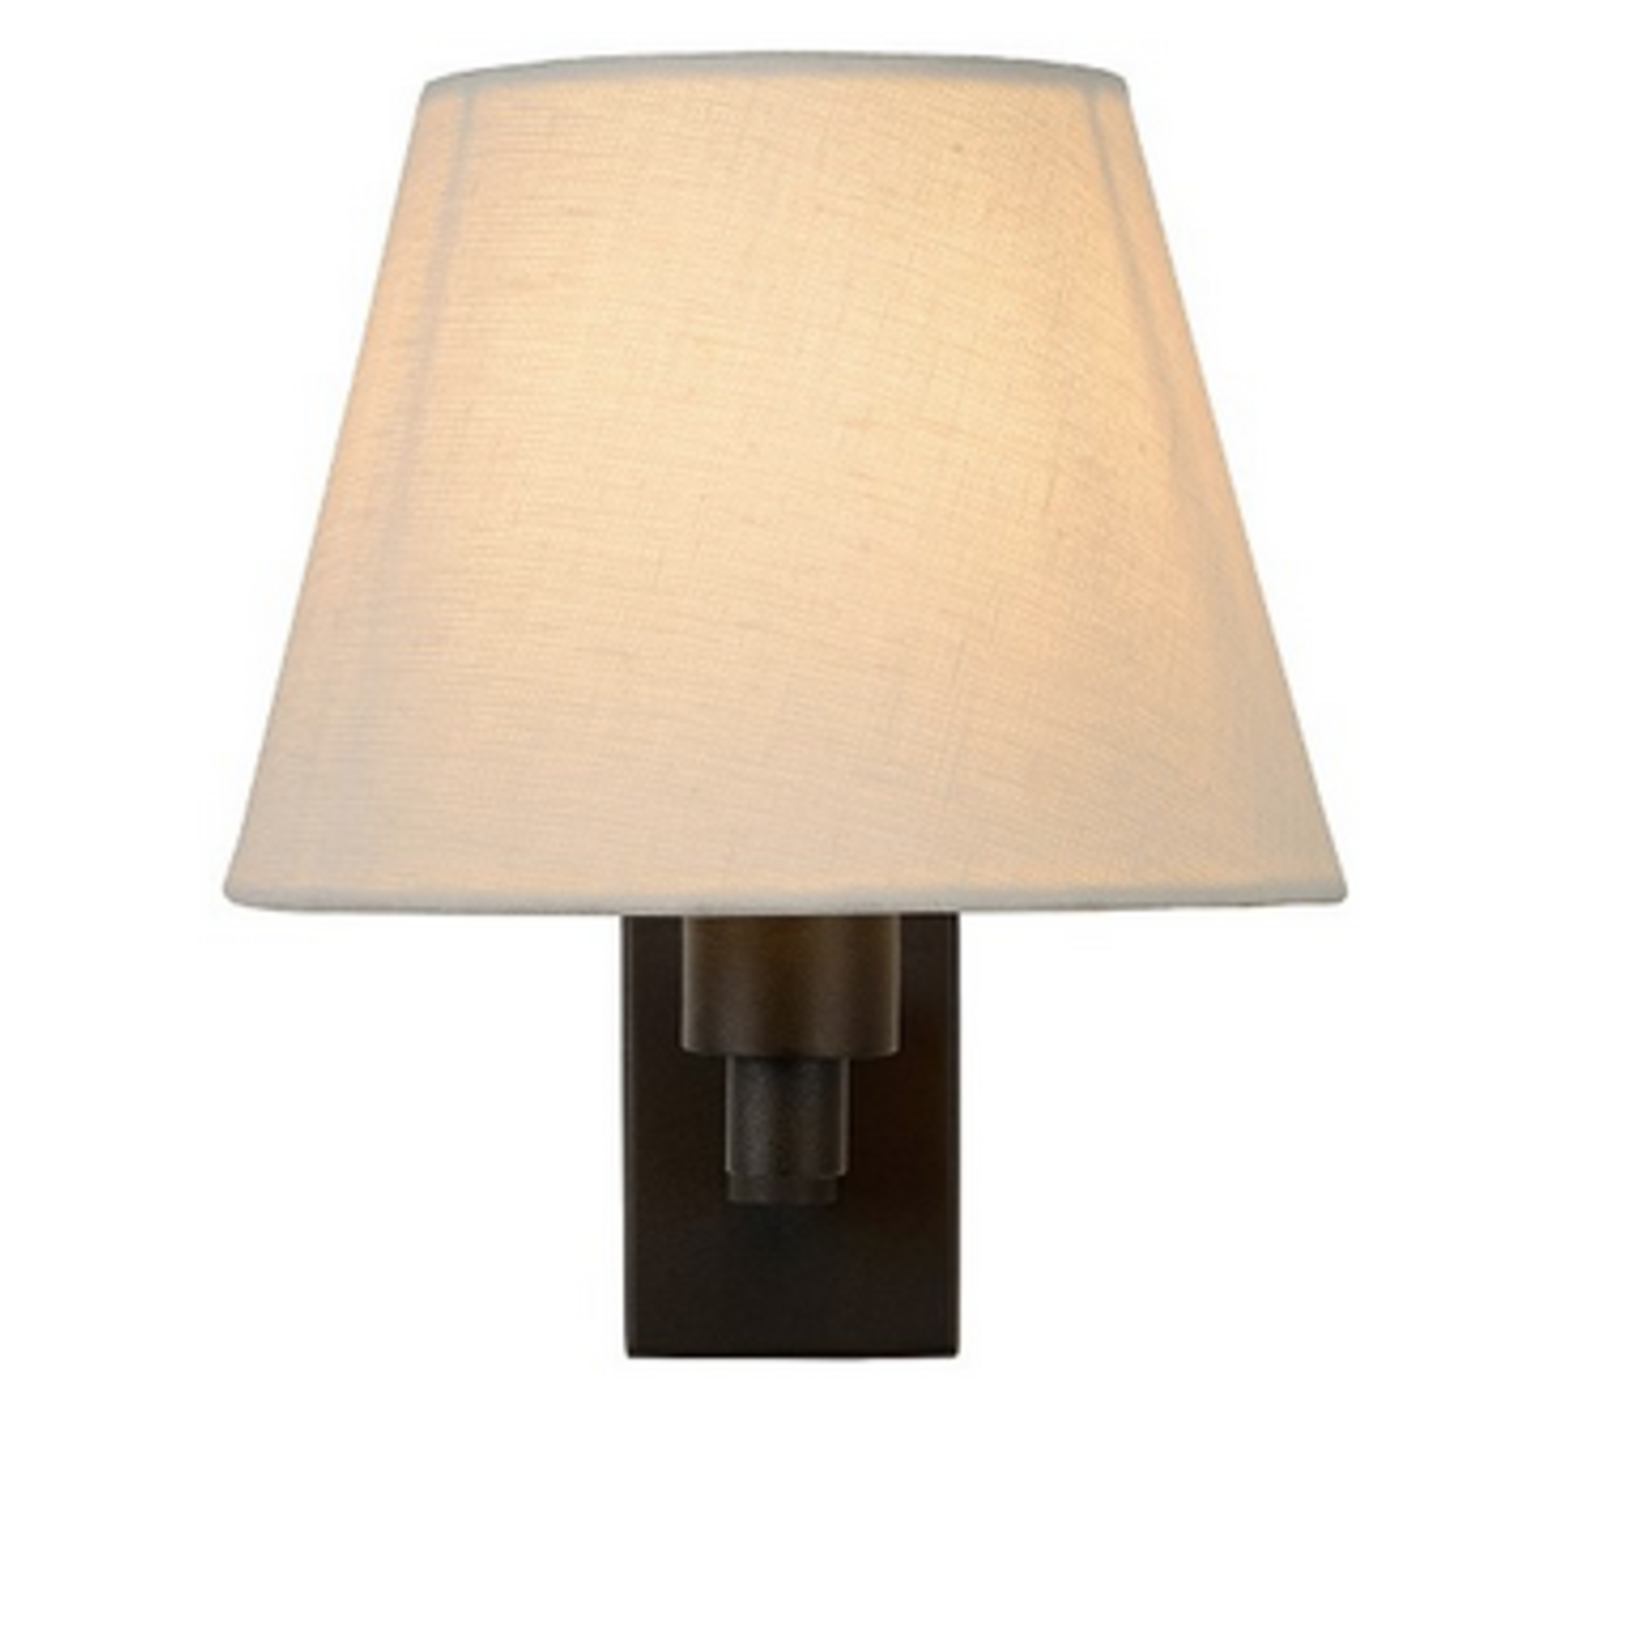 Bright Wandlampe schwenkbar,  Metall/weisser Leinen Lampenschirm 19x25xH20cm